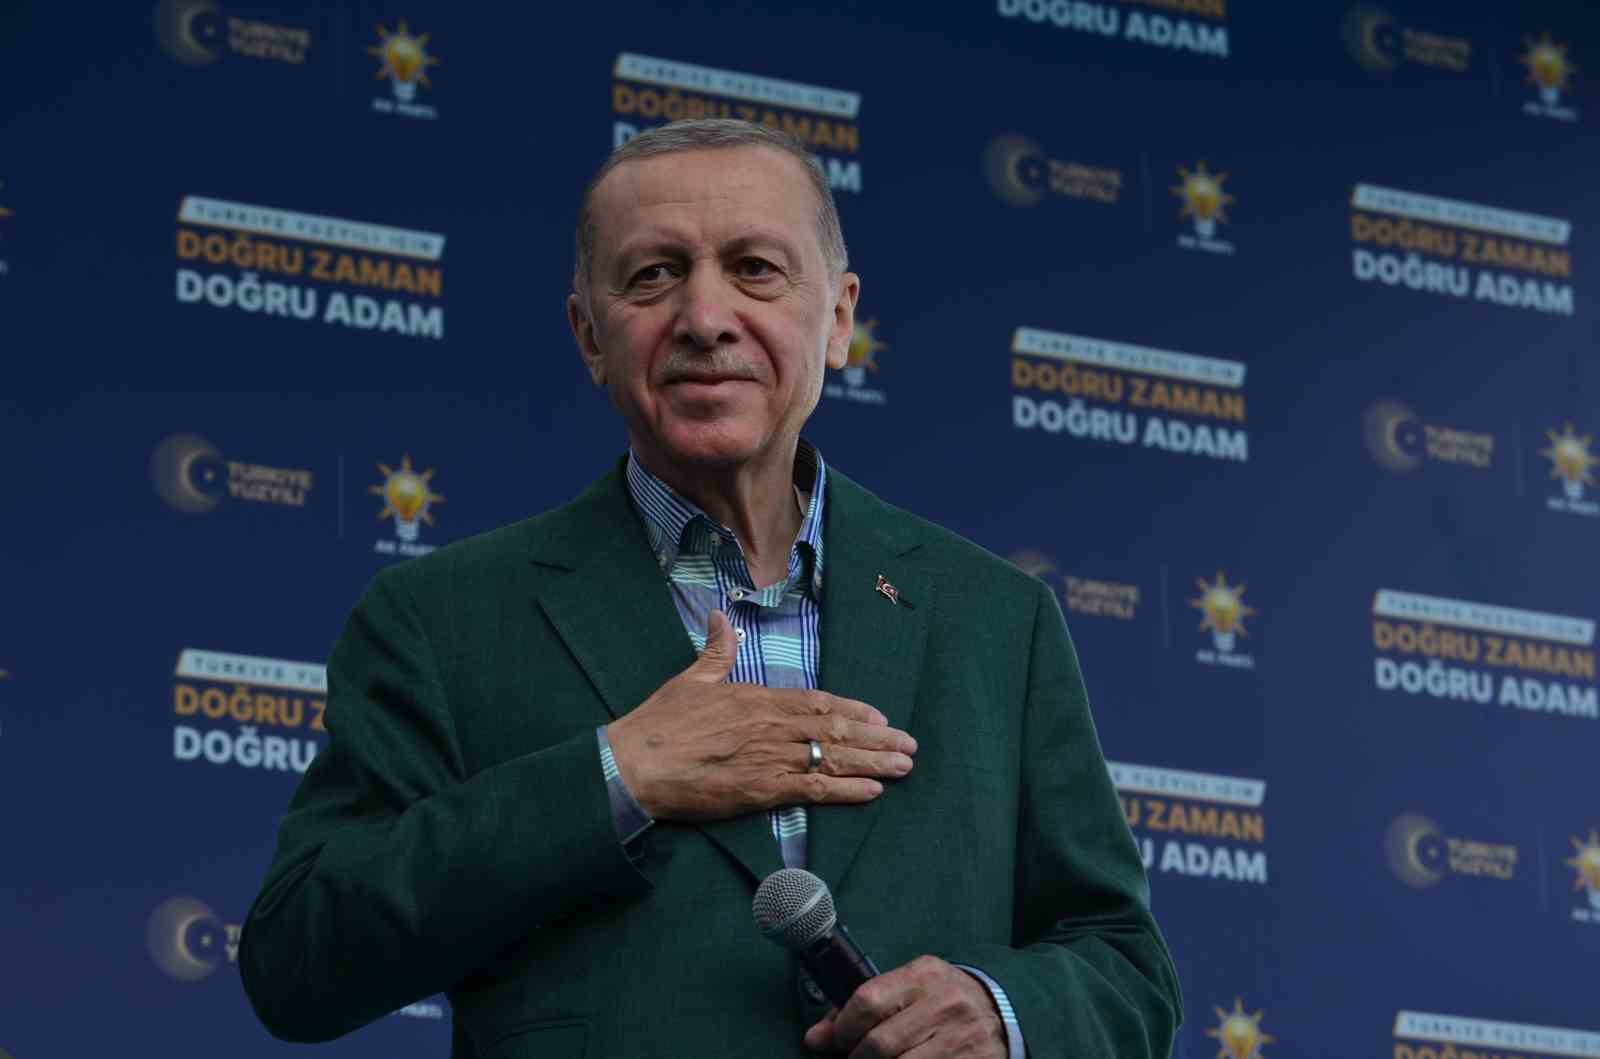 Cumhurbaşkanı Erdoğan Tekirdağda Konuştu: “Bunların Baharı Yalancı Bahar”